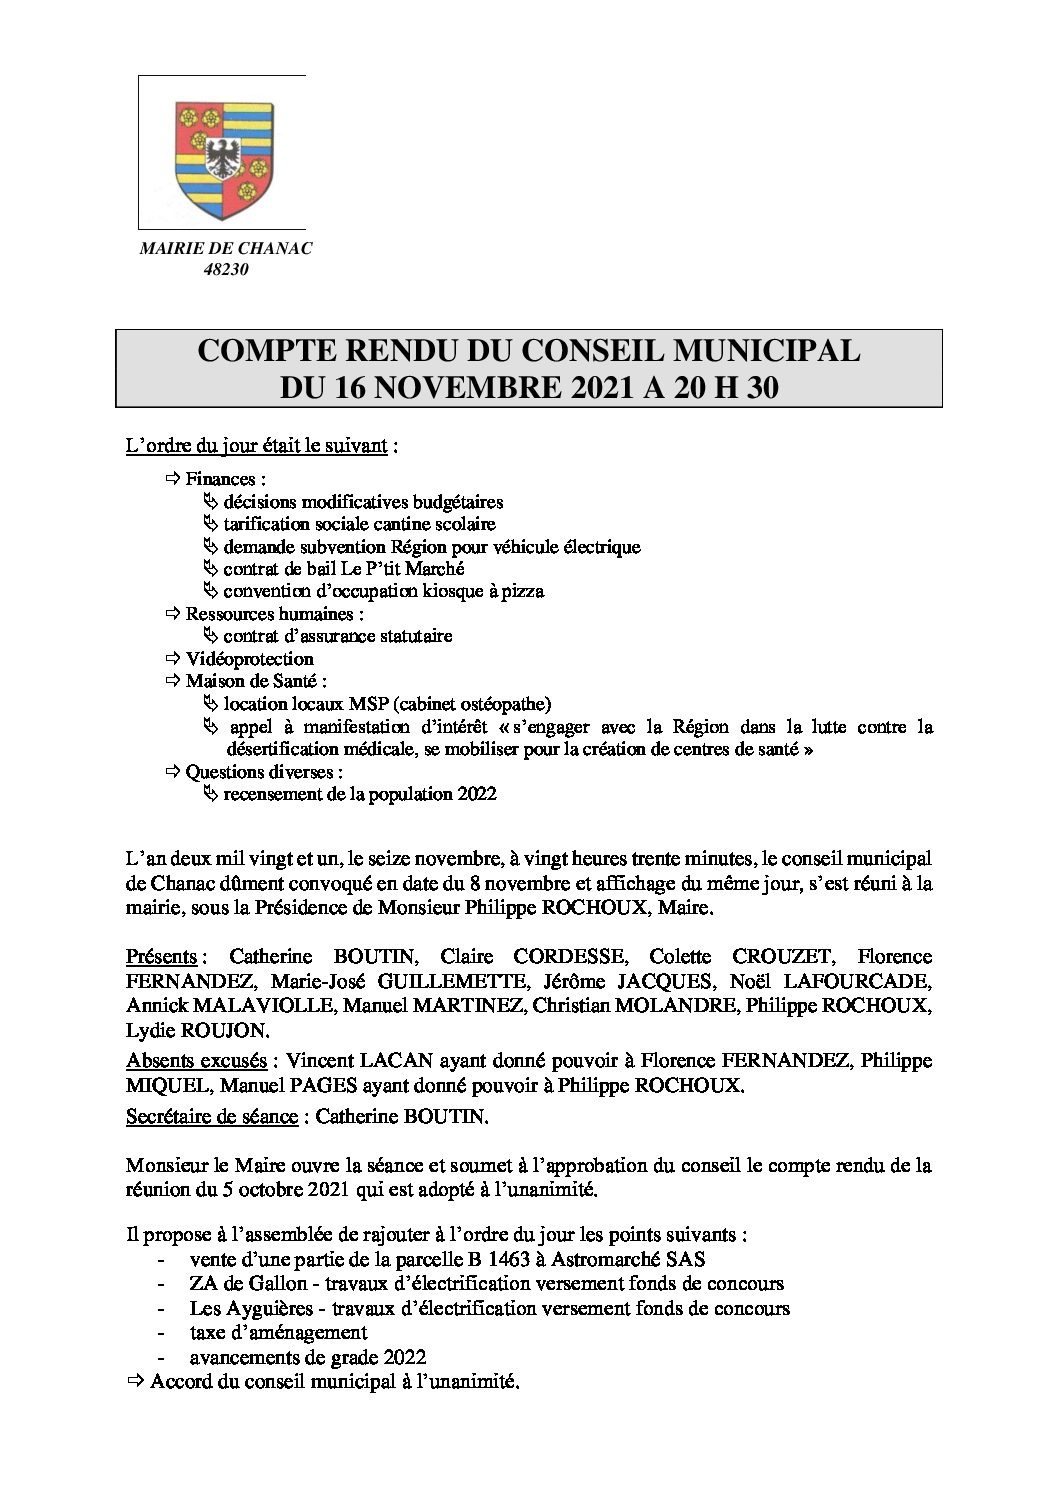 9 et 16 novembre formation départementale à l'écobuage au CFPPA de  Florac